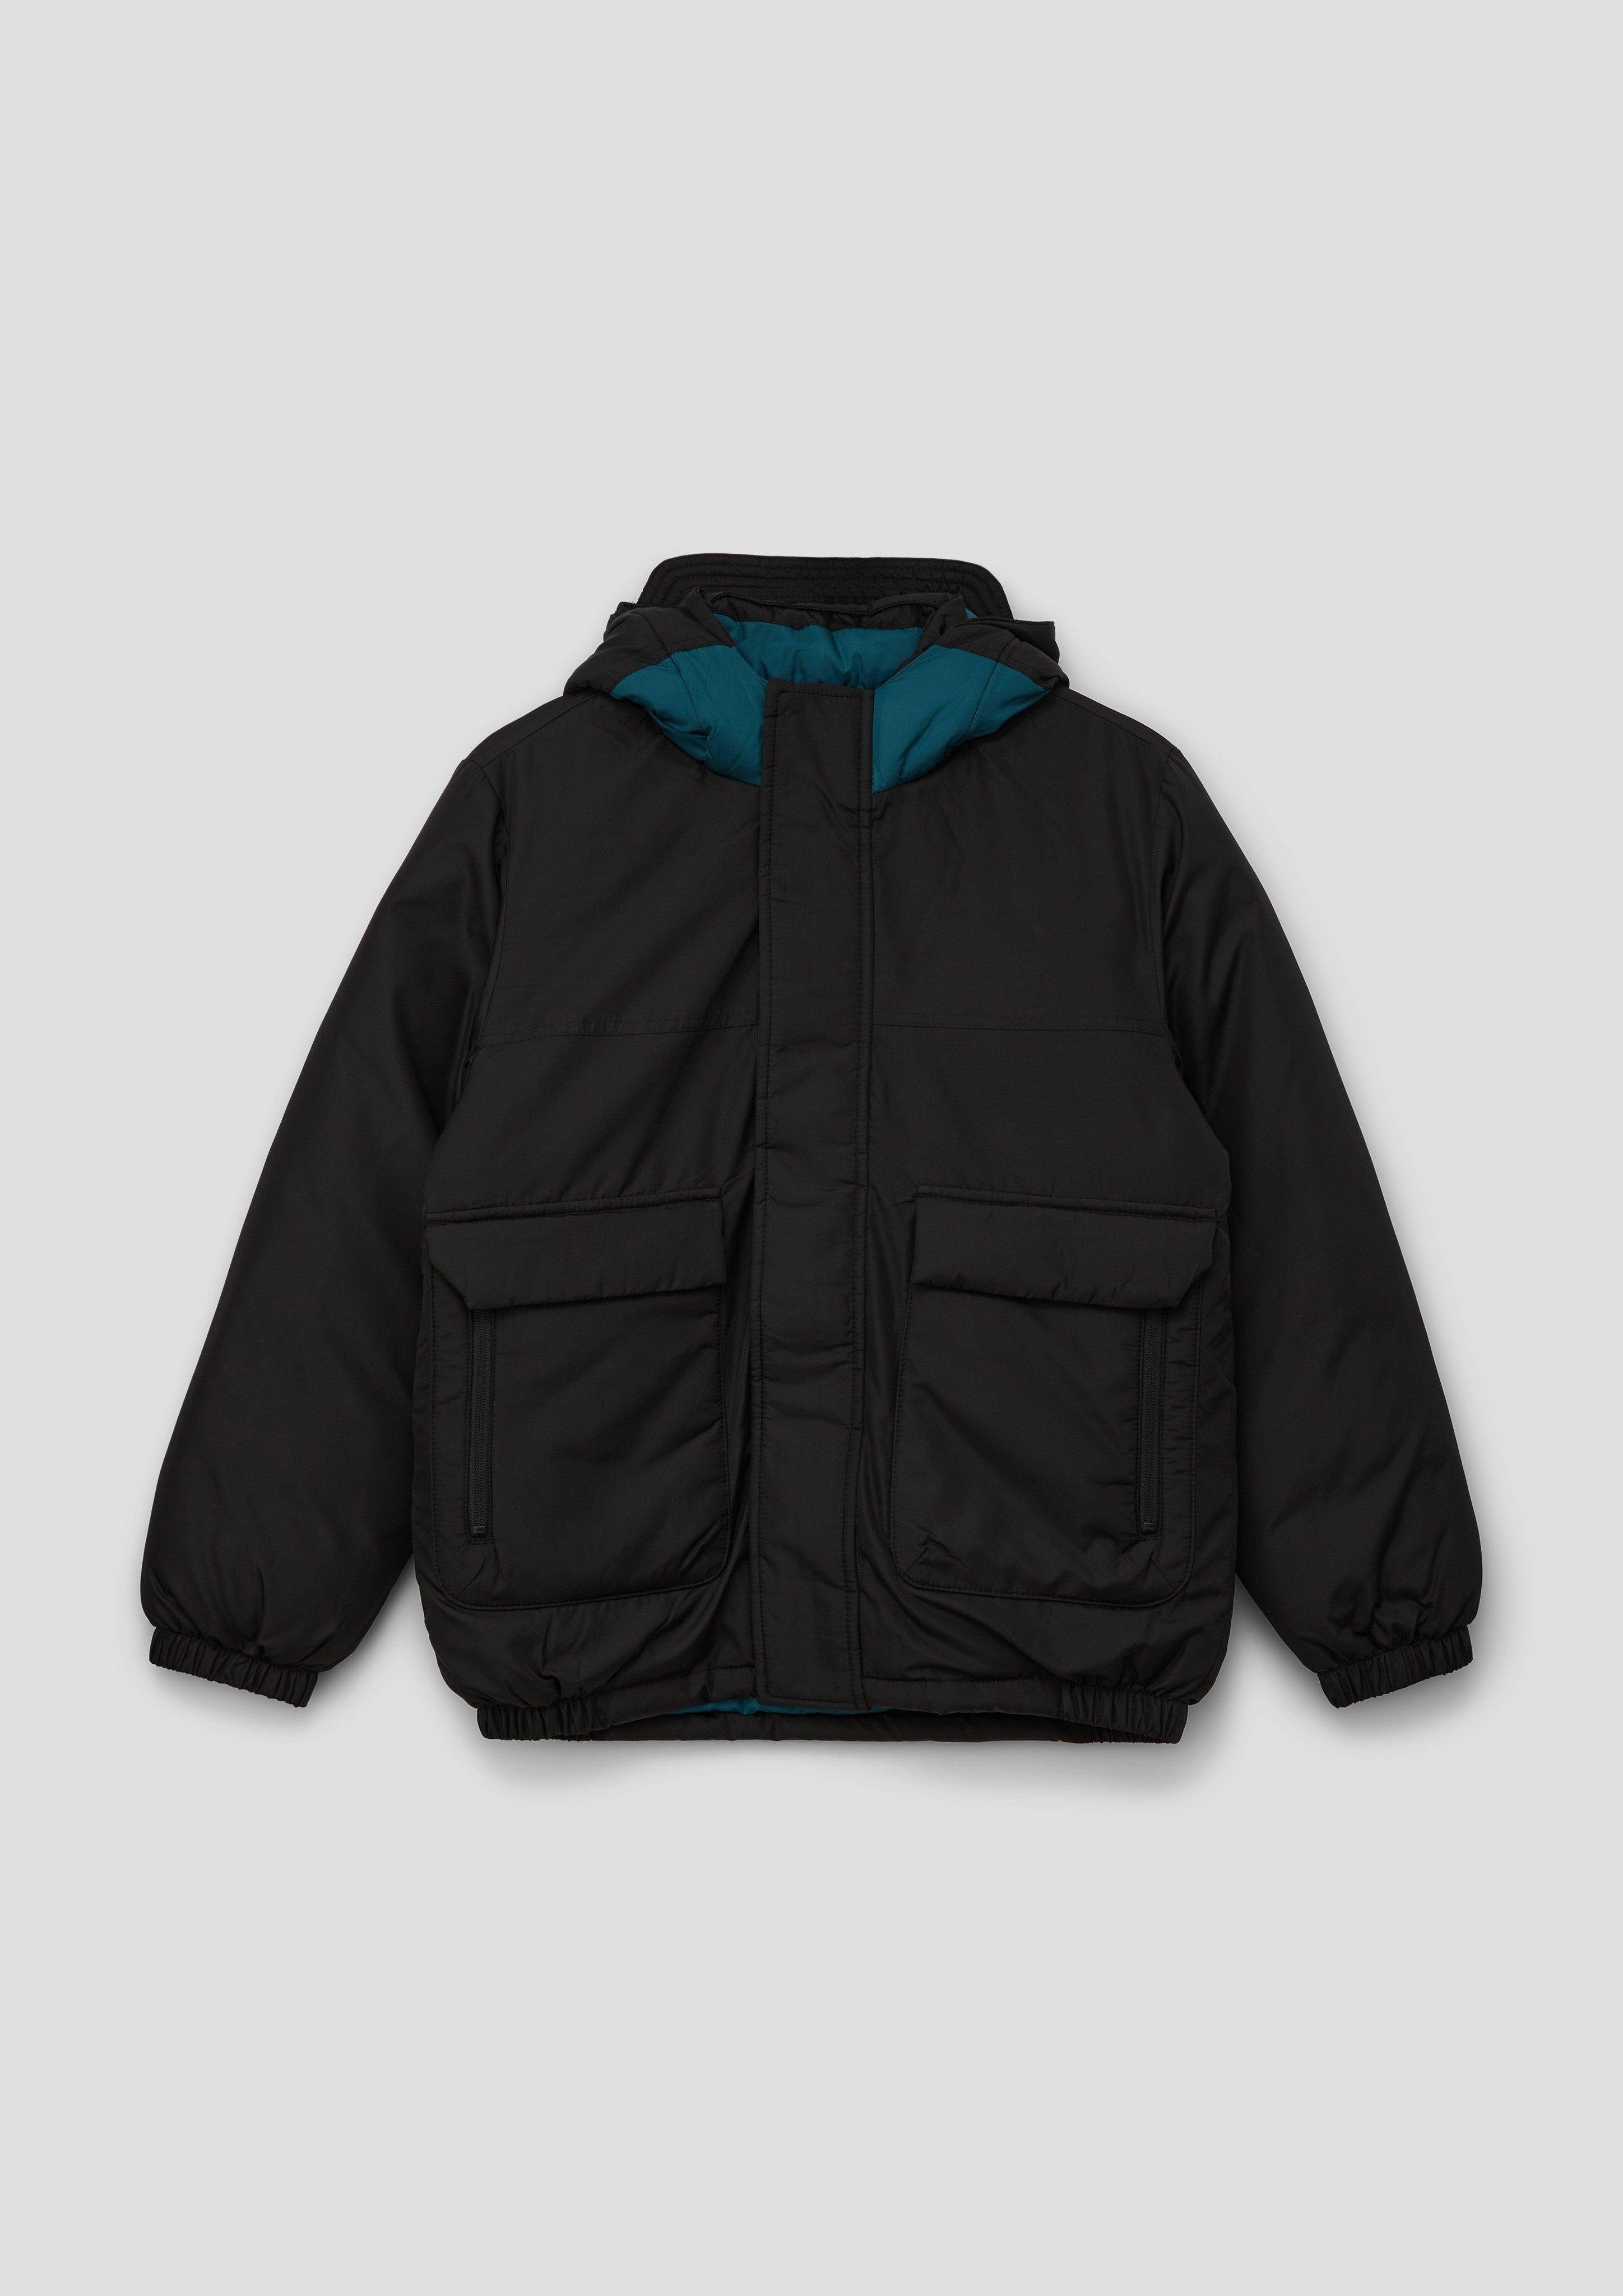 s.Oliver Outdoorjacke Jacke mit reflektierenden Prints Kontrast-Details schwarz